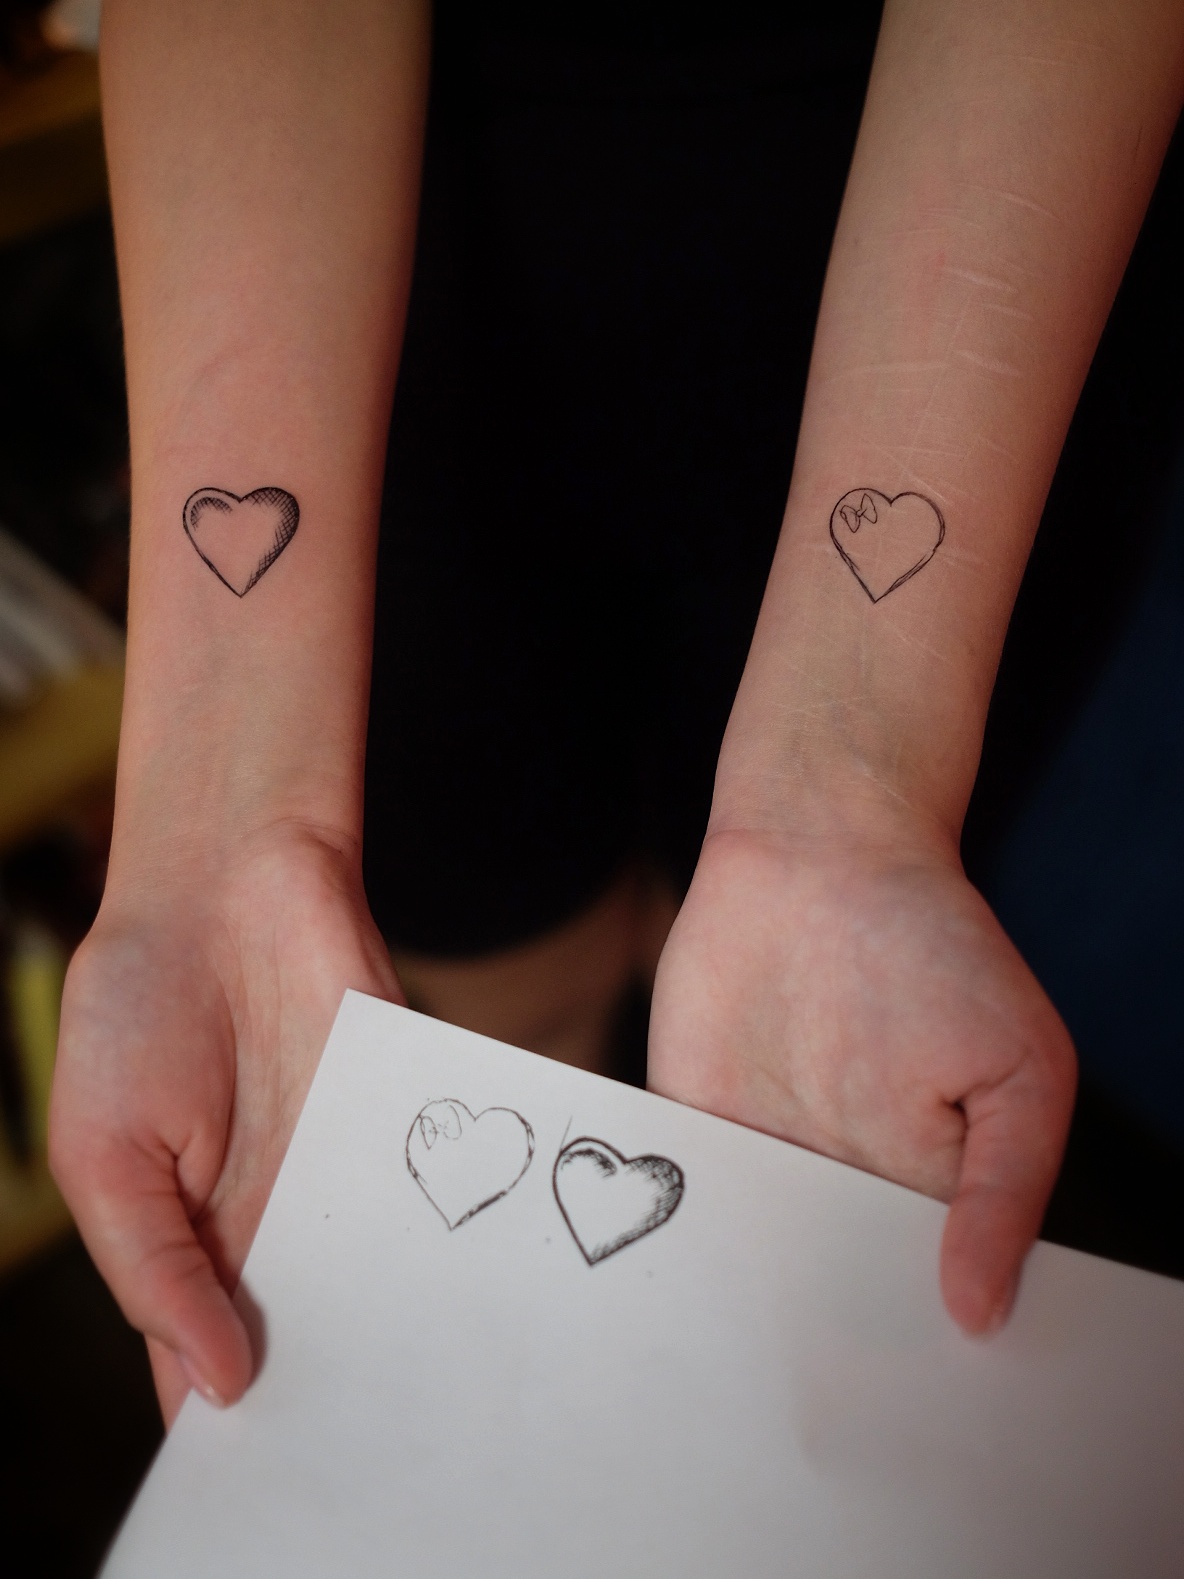 Мини-тату: лучшие идеи для первой татуировки, фото